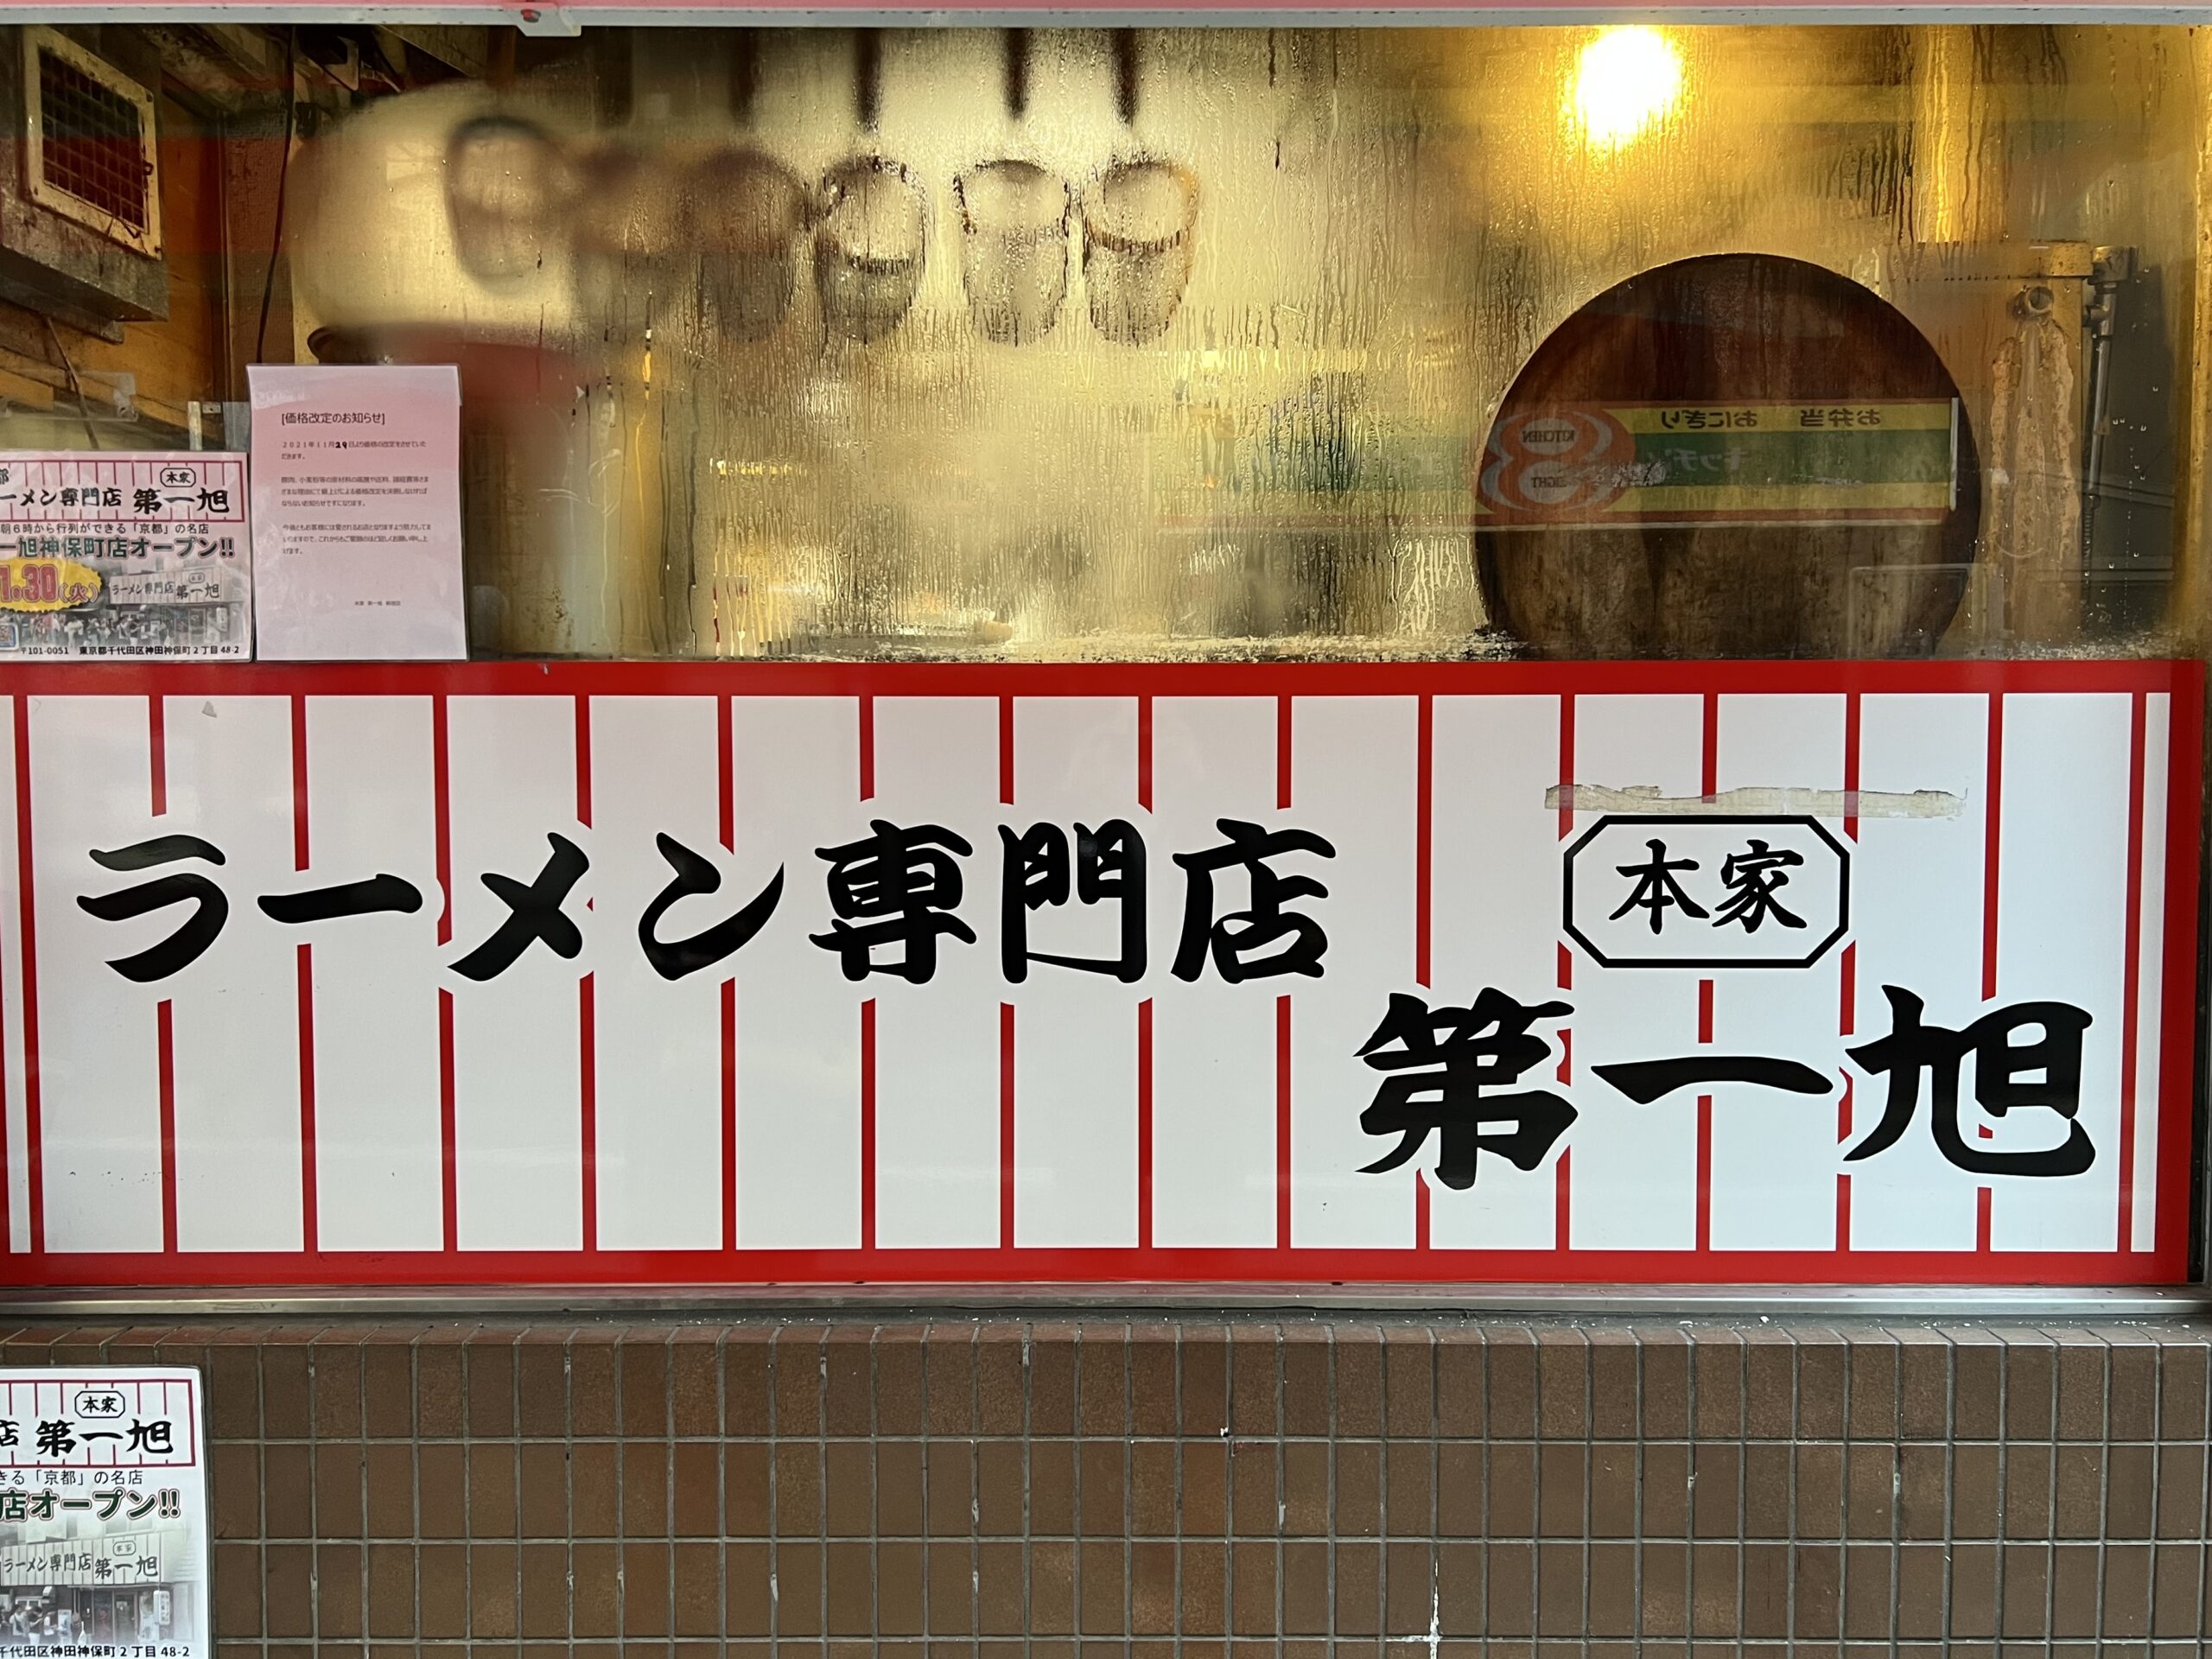 早朝5時から行列のできる京都のラーメン店が新宿に出店 第一旭 ぶらりデブり旅 Kanbyブログ